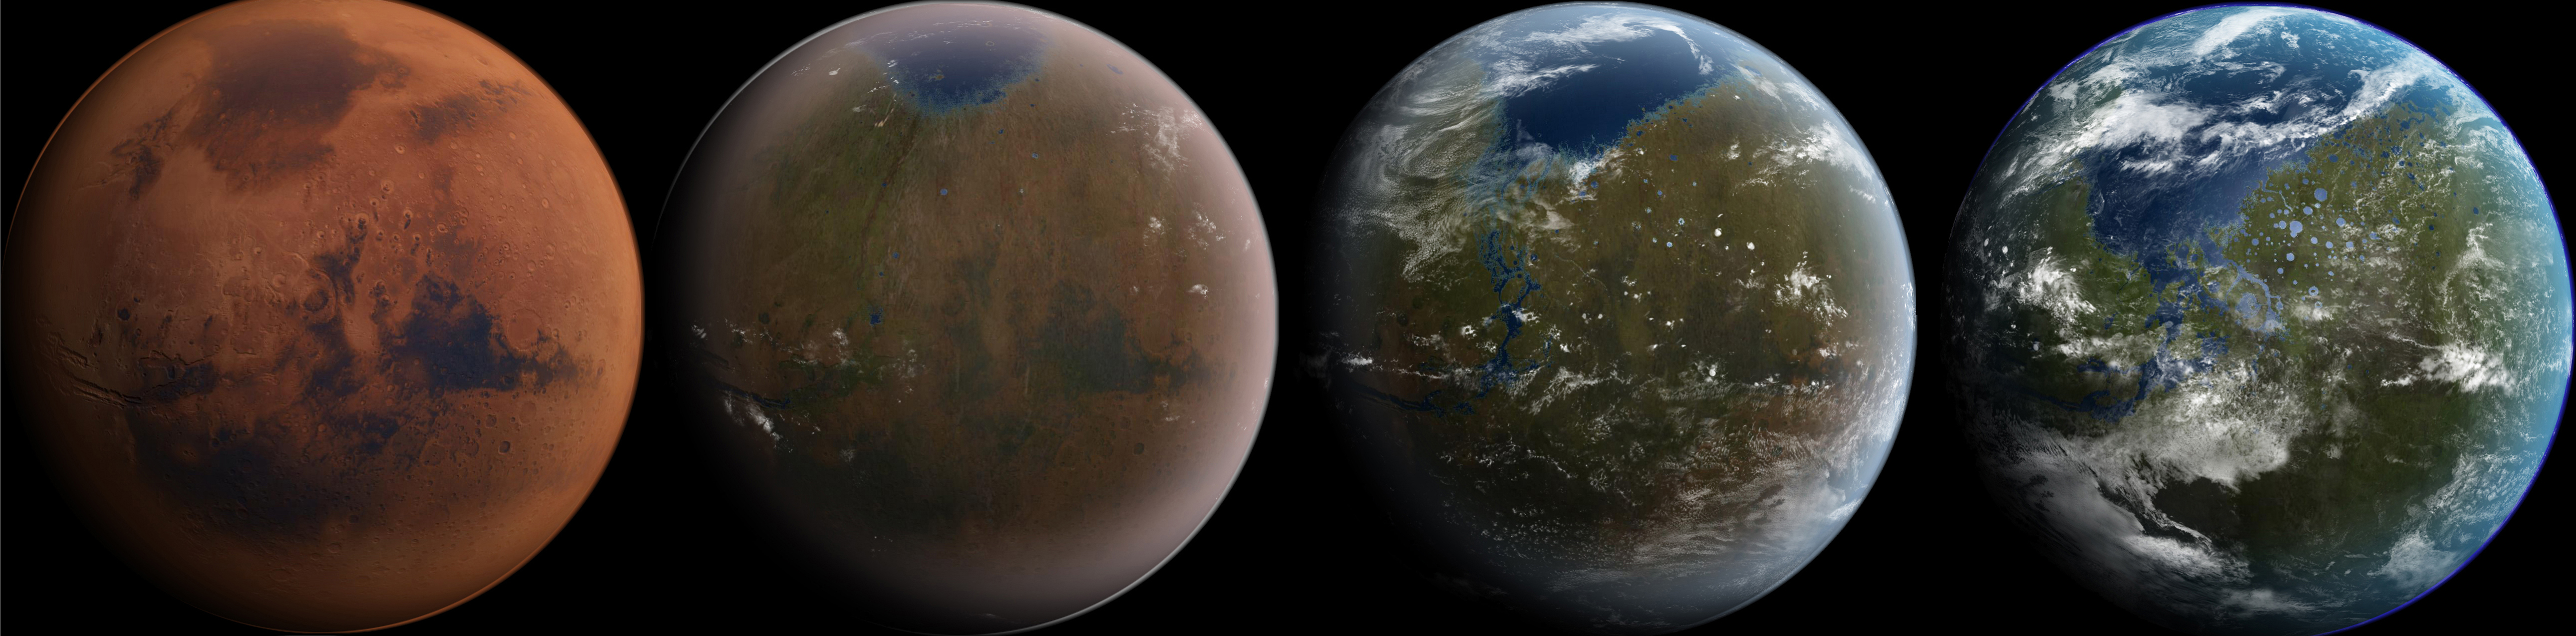 Fire stadier i terraformingen av Mars. Illustrasjon: Wikipedia